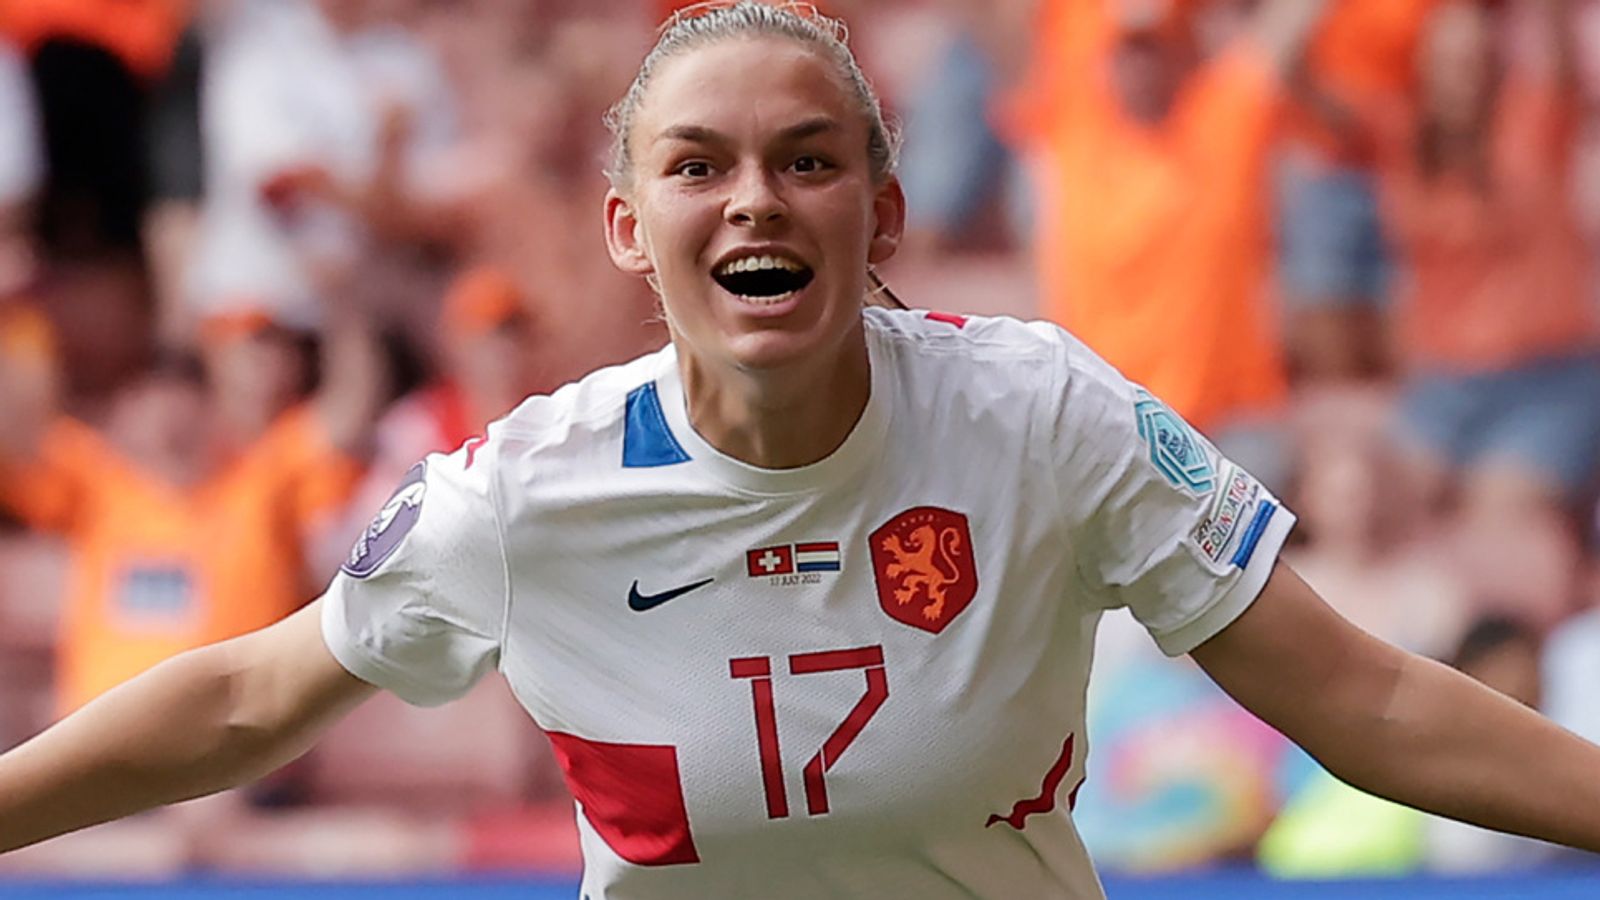 Schweiz – Niederlande 1:4: Das späte Doppel von Romy Leuchter hilft den Gastgebern, das Viertelfinale von Frankreich zu erreichen |  Fußball Nachrichten